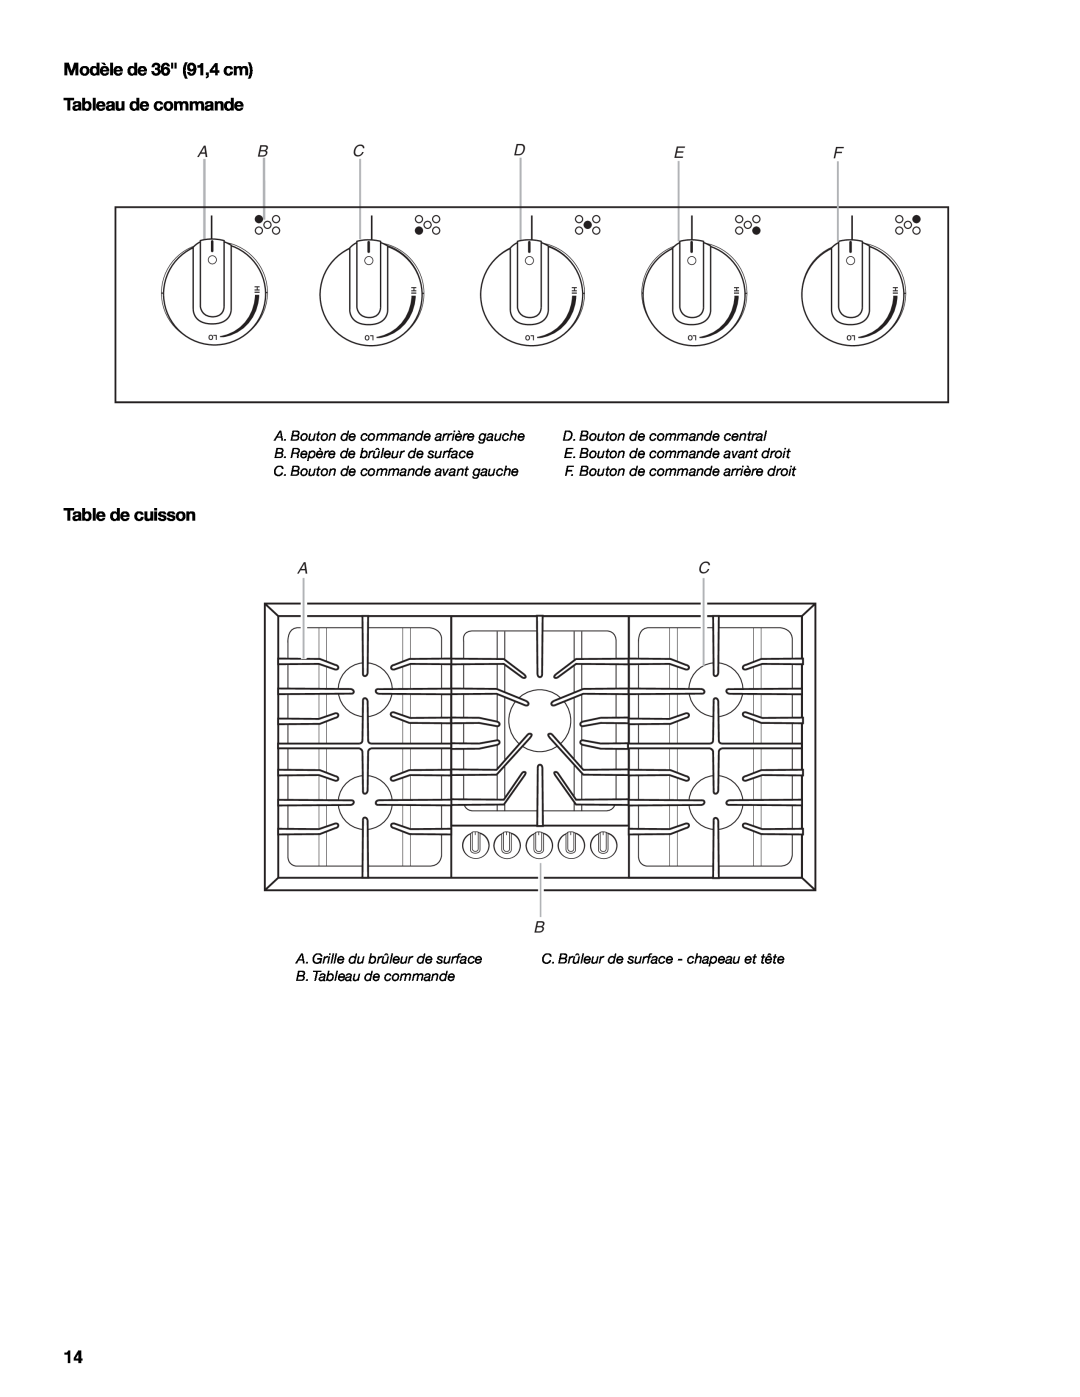 Whirlpool 9761890 Modèle de 36 91,4 cm Tableau de commande, Table de cuisson, A Bcdef, C. Bouton de commande avant gauche 